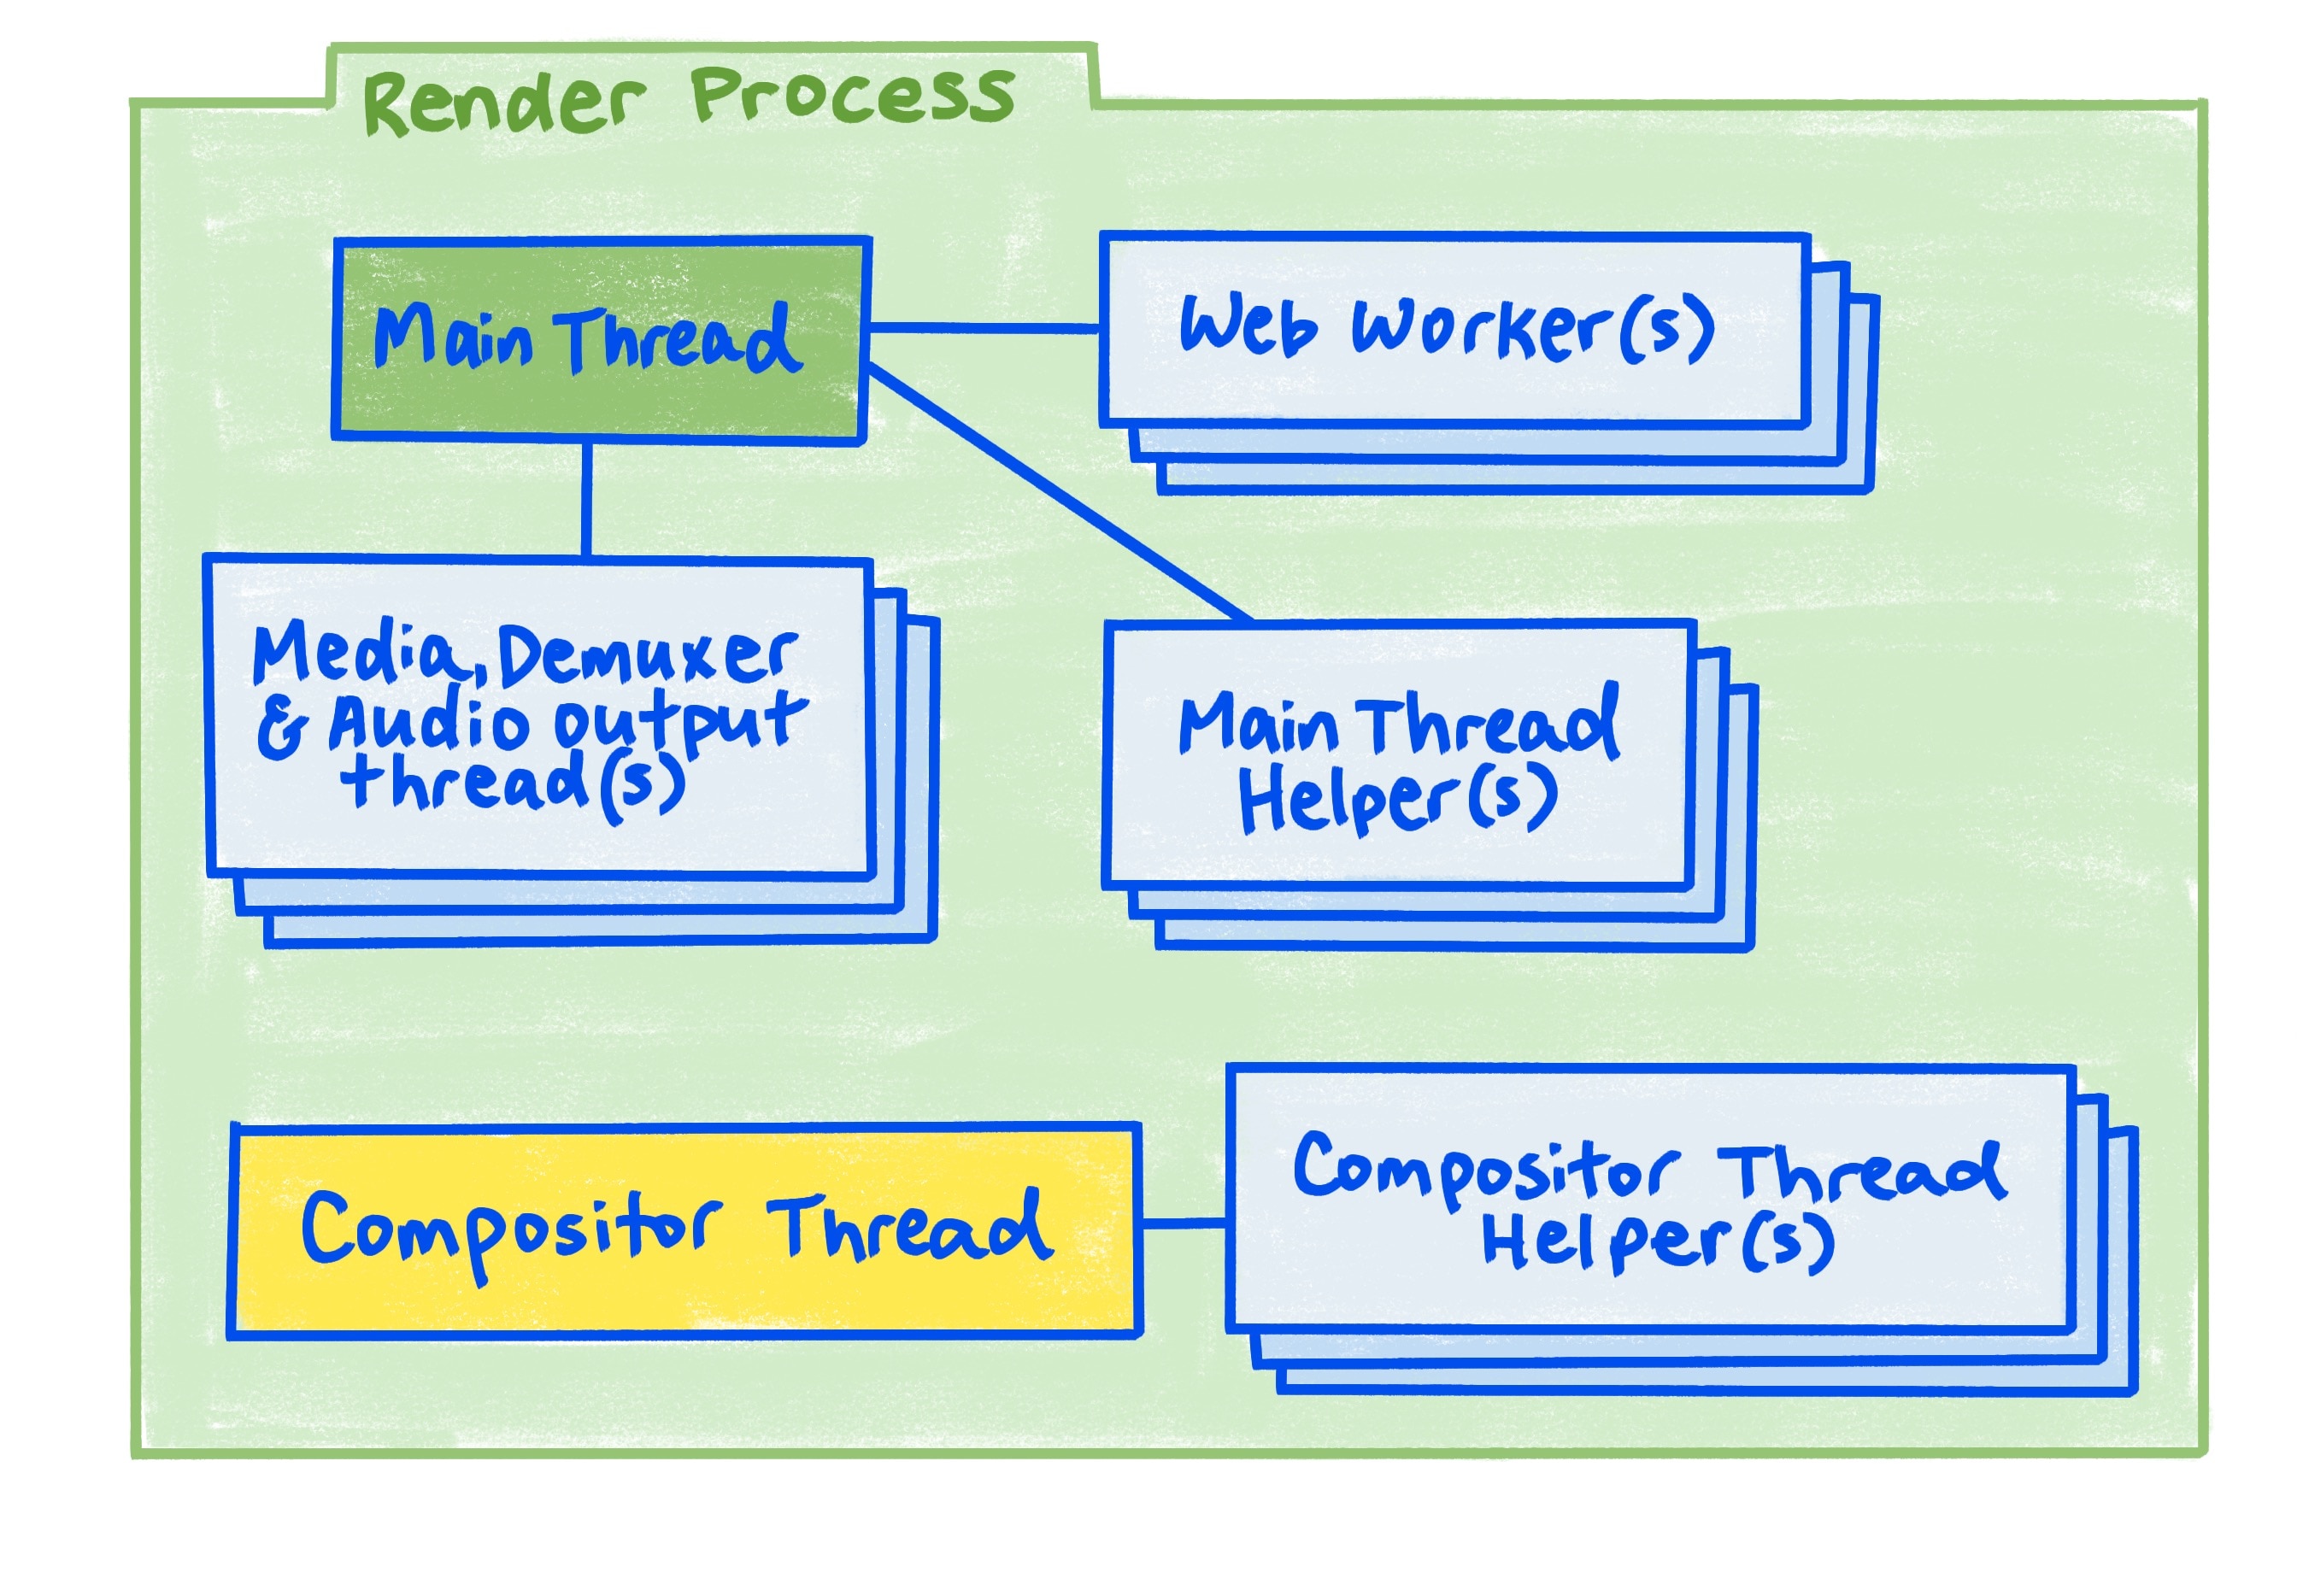 이 문서에 설명된 렌더링 프로세스 다이어그램